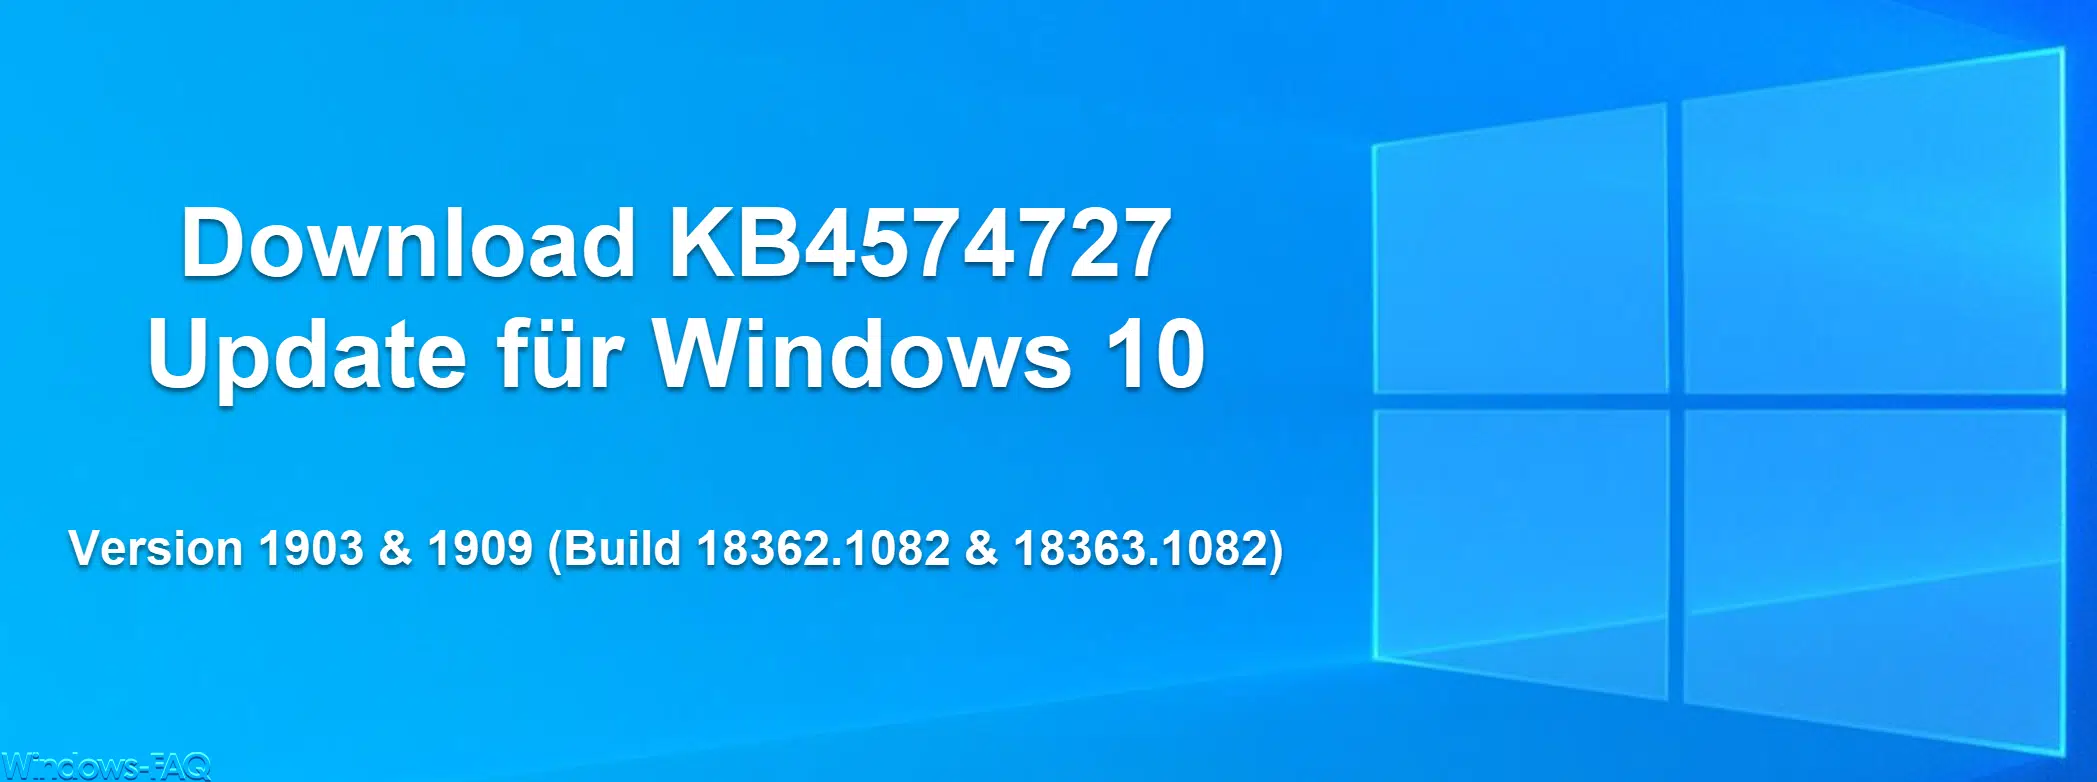 Download KB4574727 Update für Windows 10 Version 1903 & 1909 (Build 18362.1082 & 18363.1082)